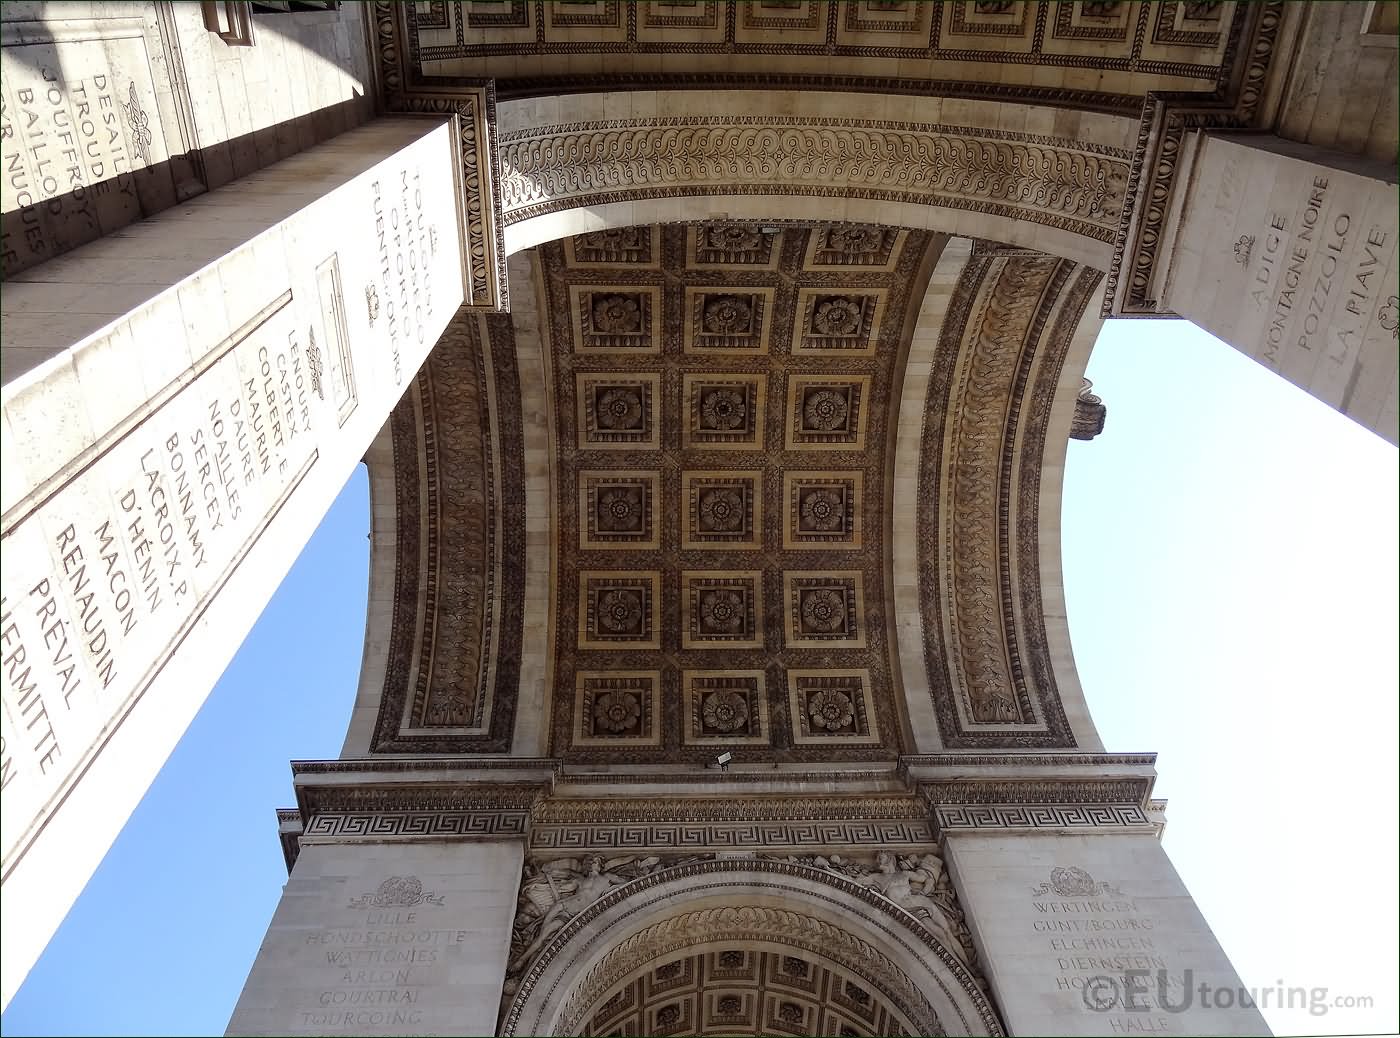 Inside The Arc de Triomphe